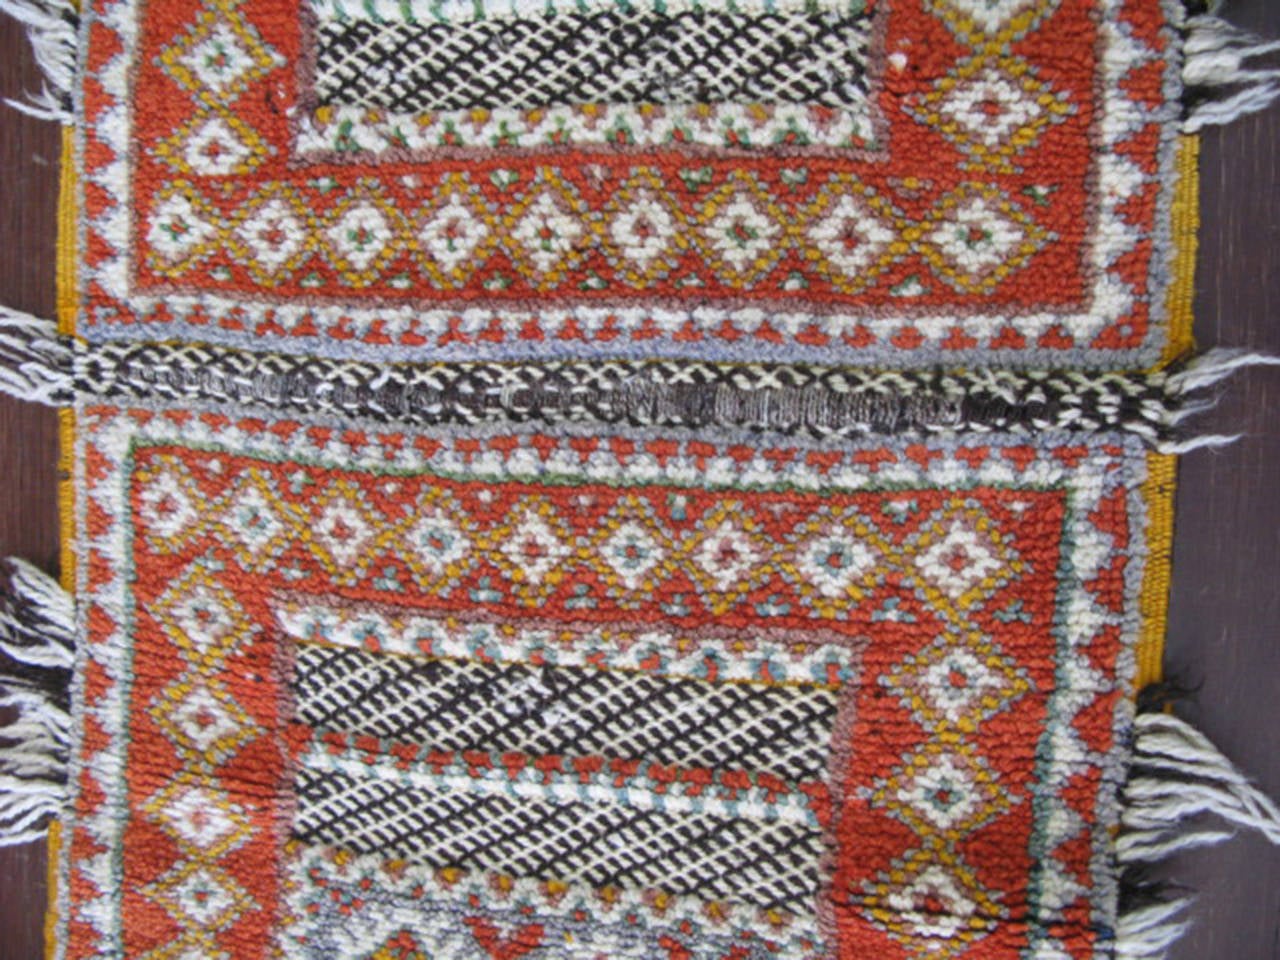 Hand-Woven Moroccan Rug